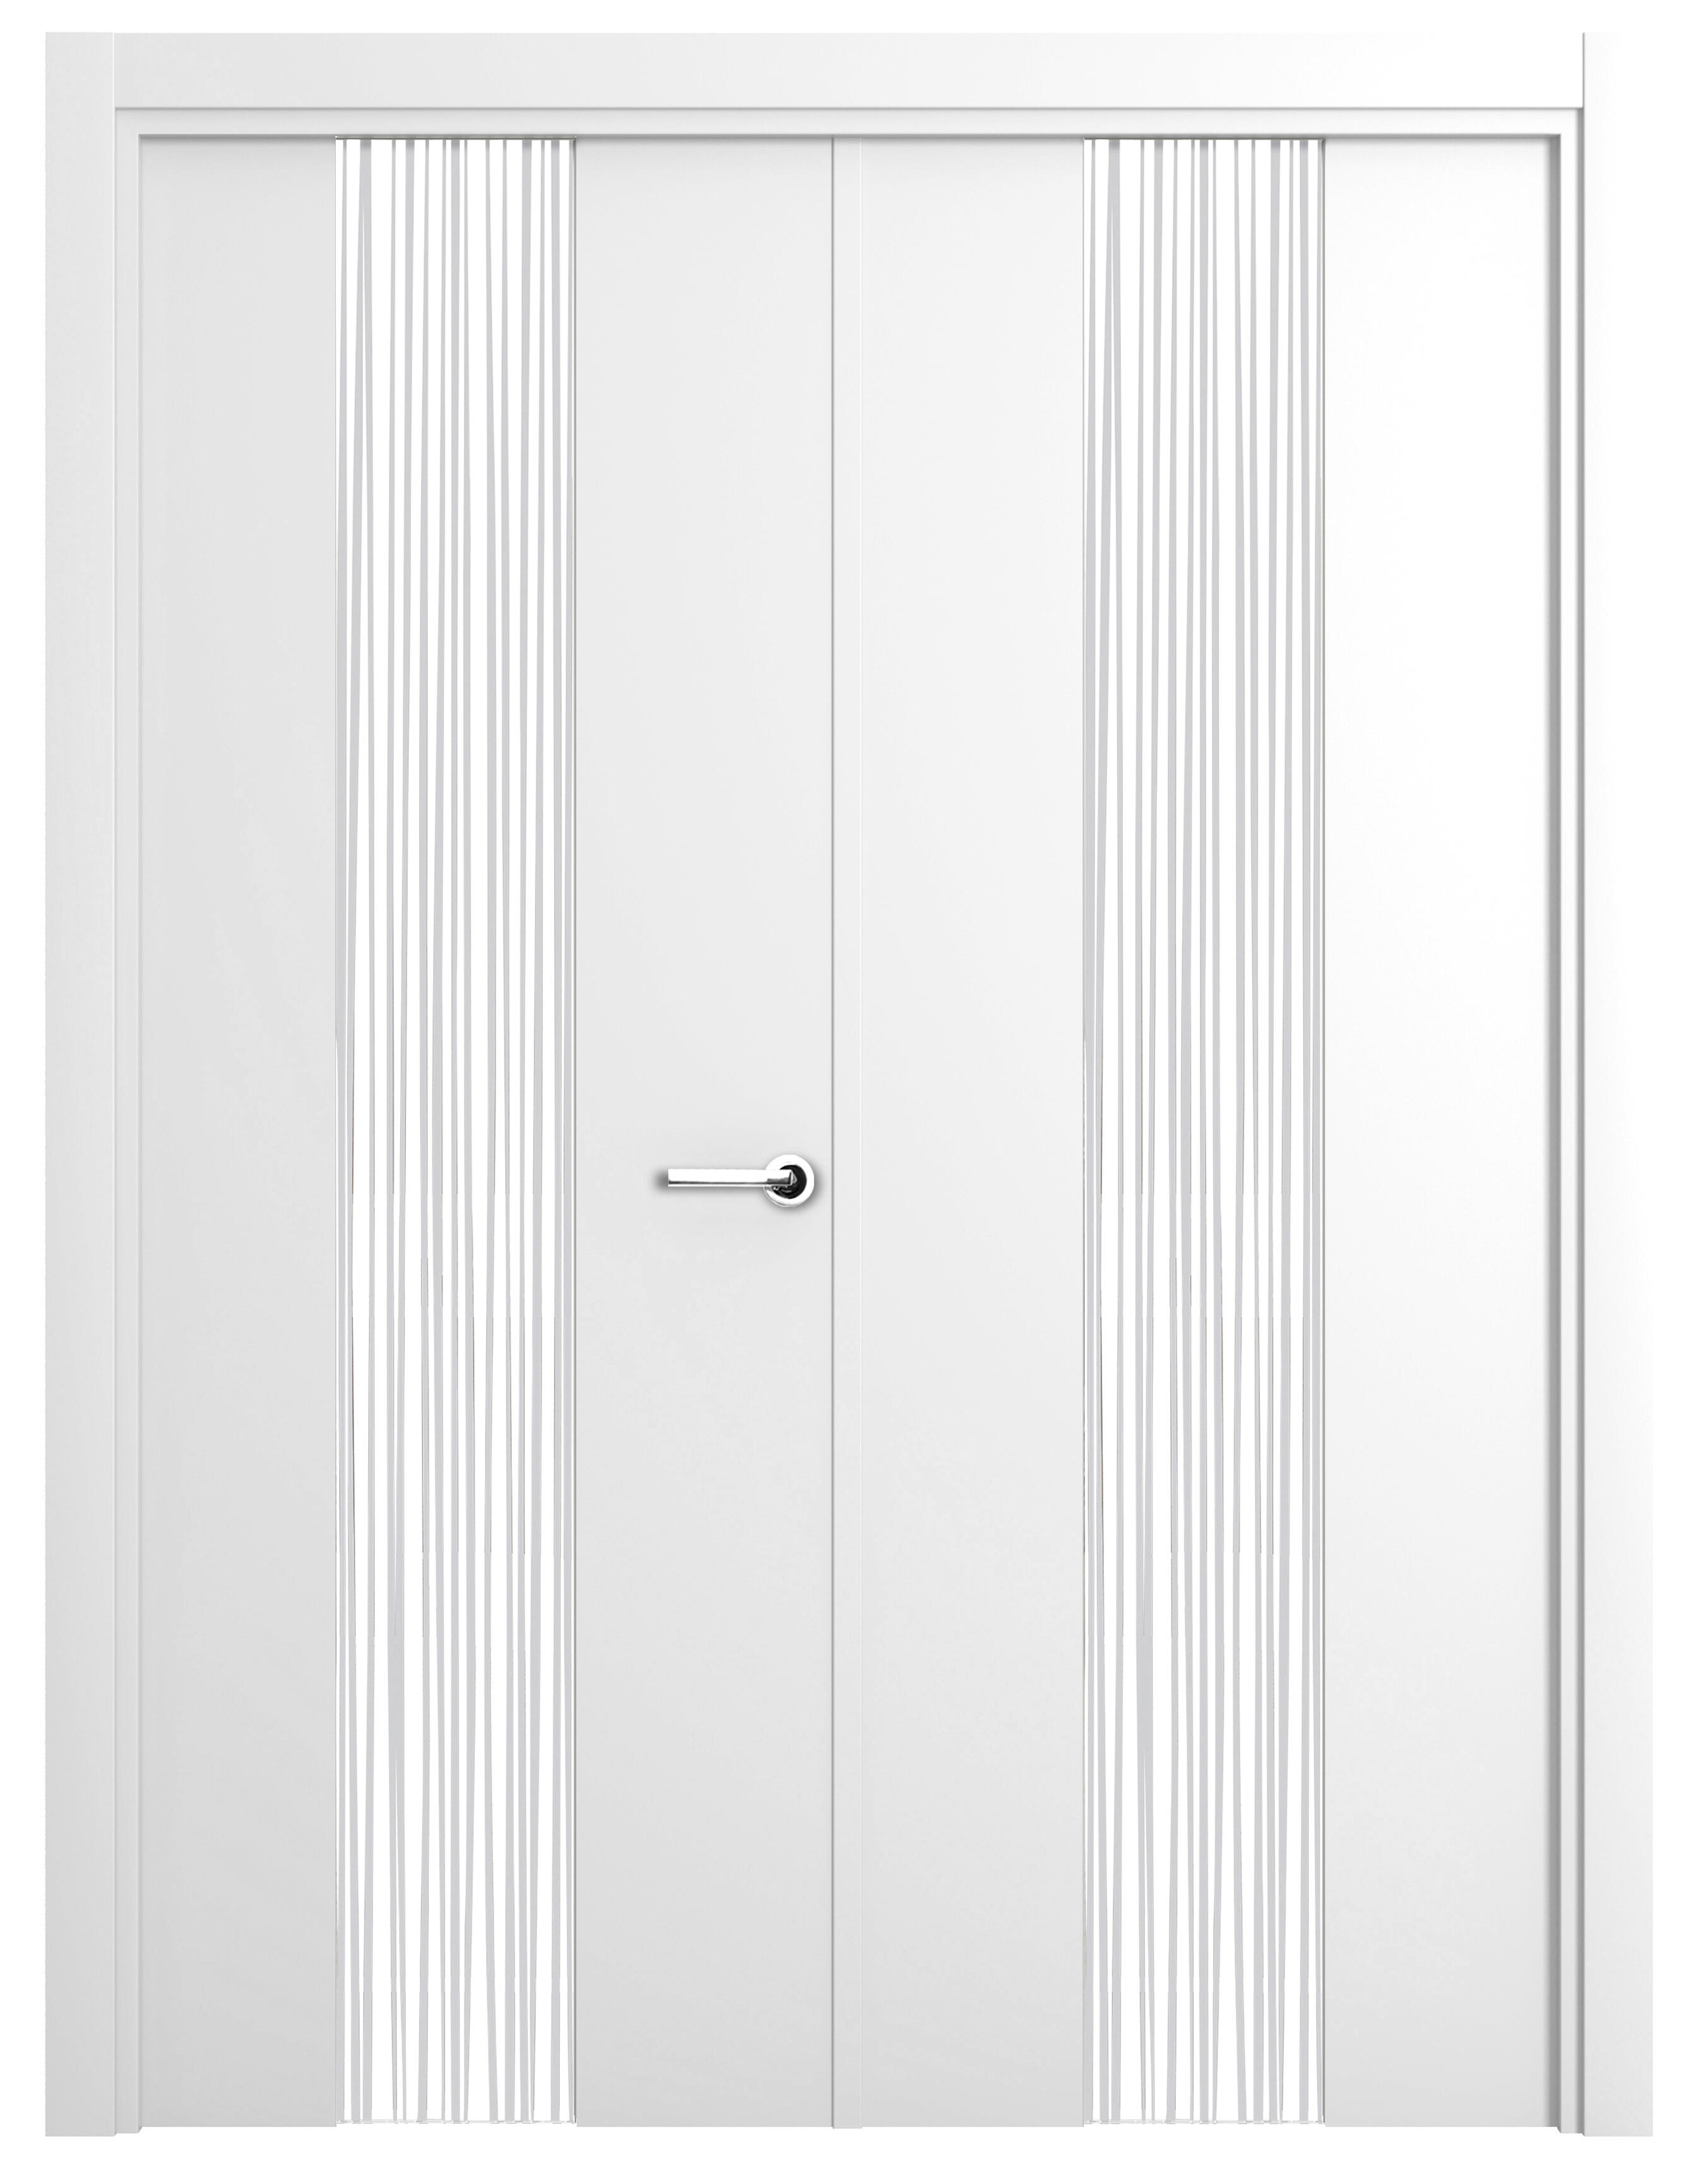 Puerta abatible quevedo blanca premium con cristal blanco izquierda de 125 c